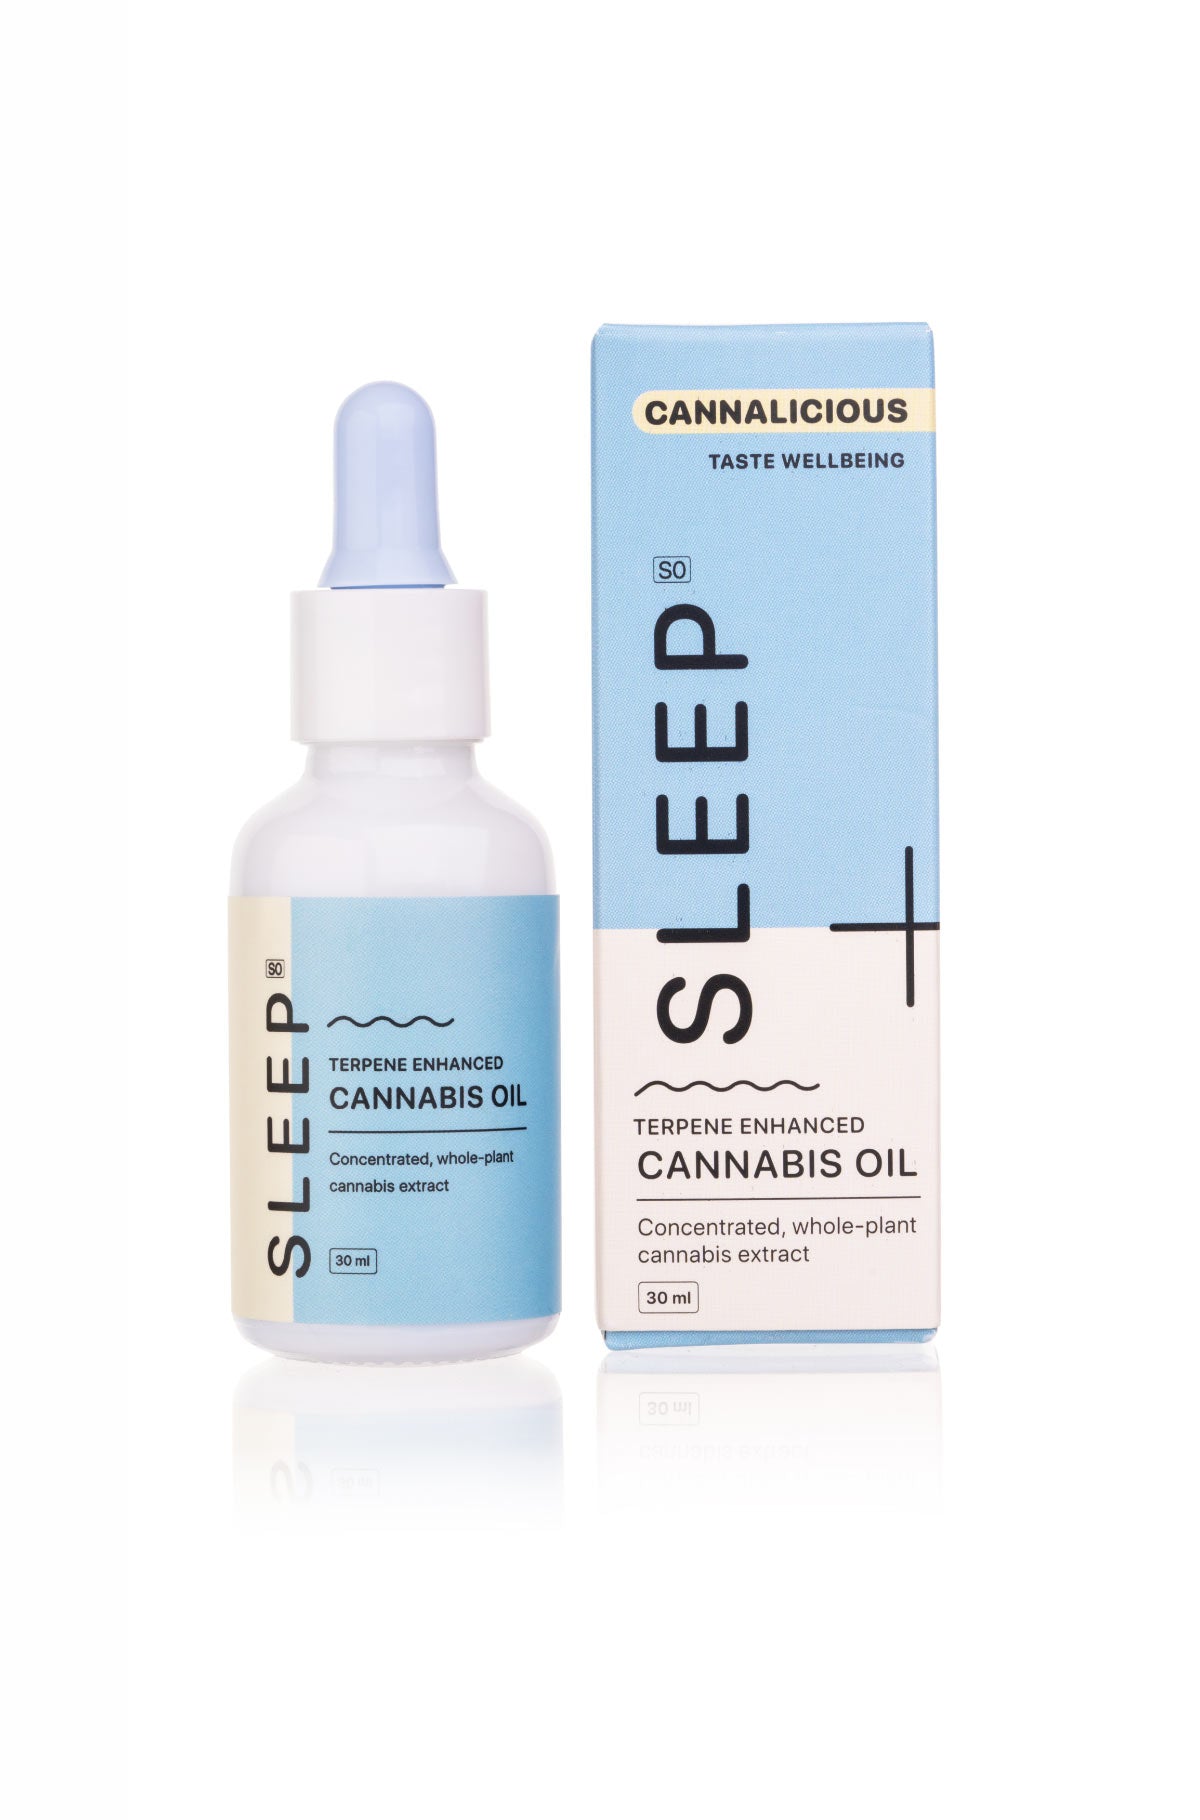 Cannalicious Full Extract Cannabis Oil – Sleep Support